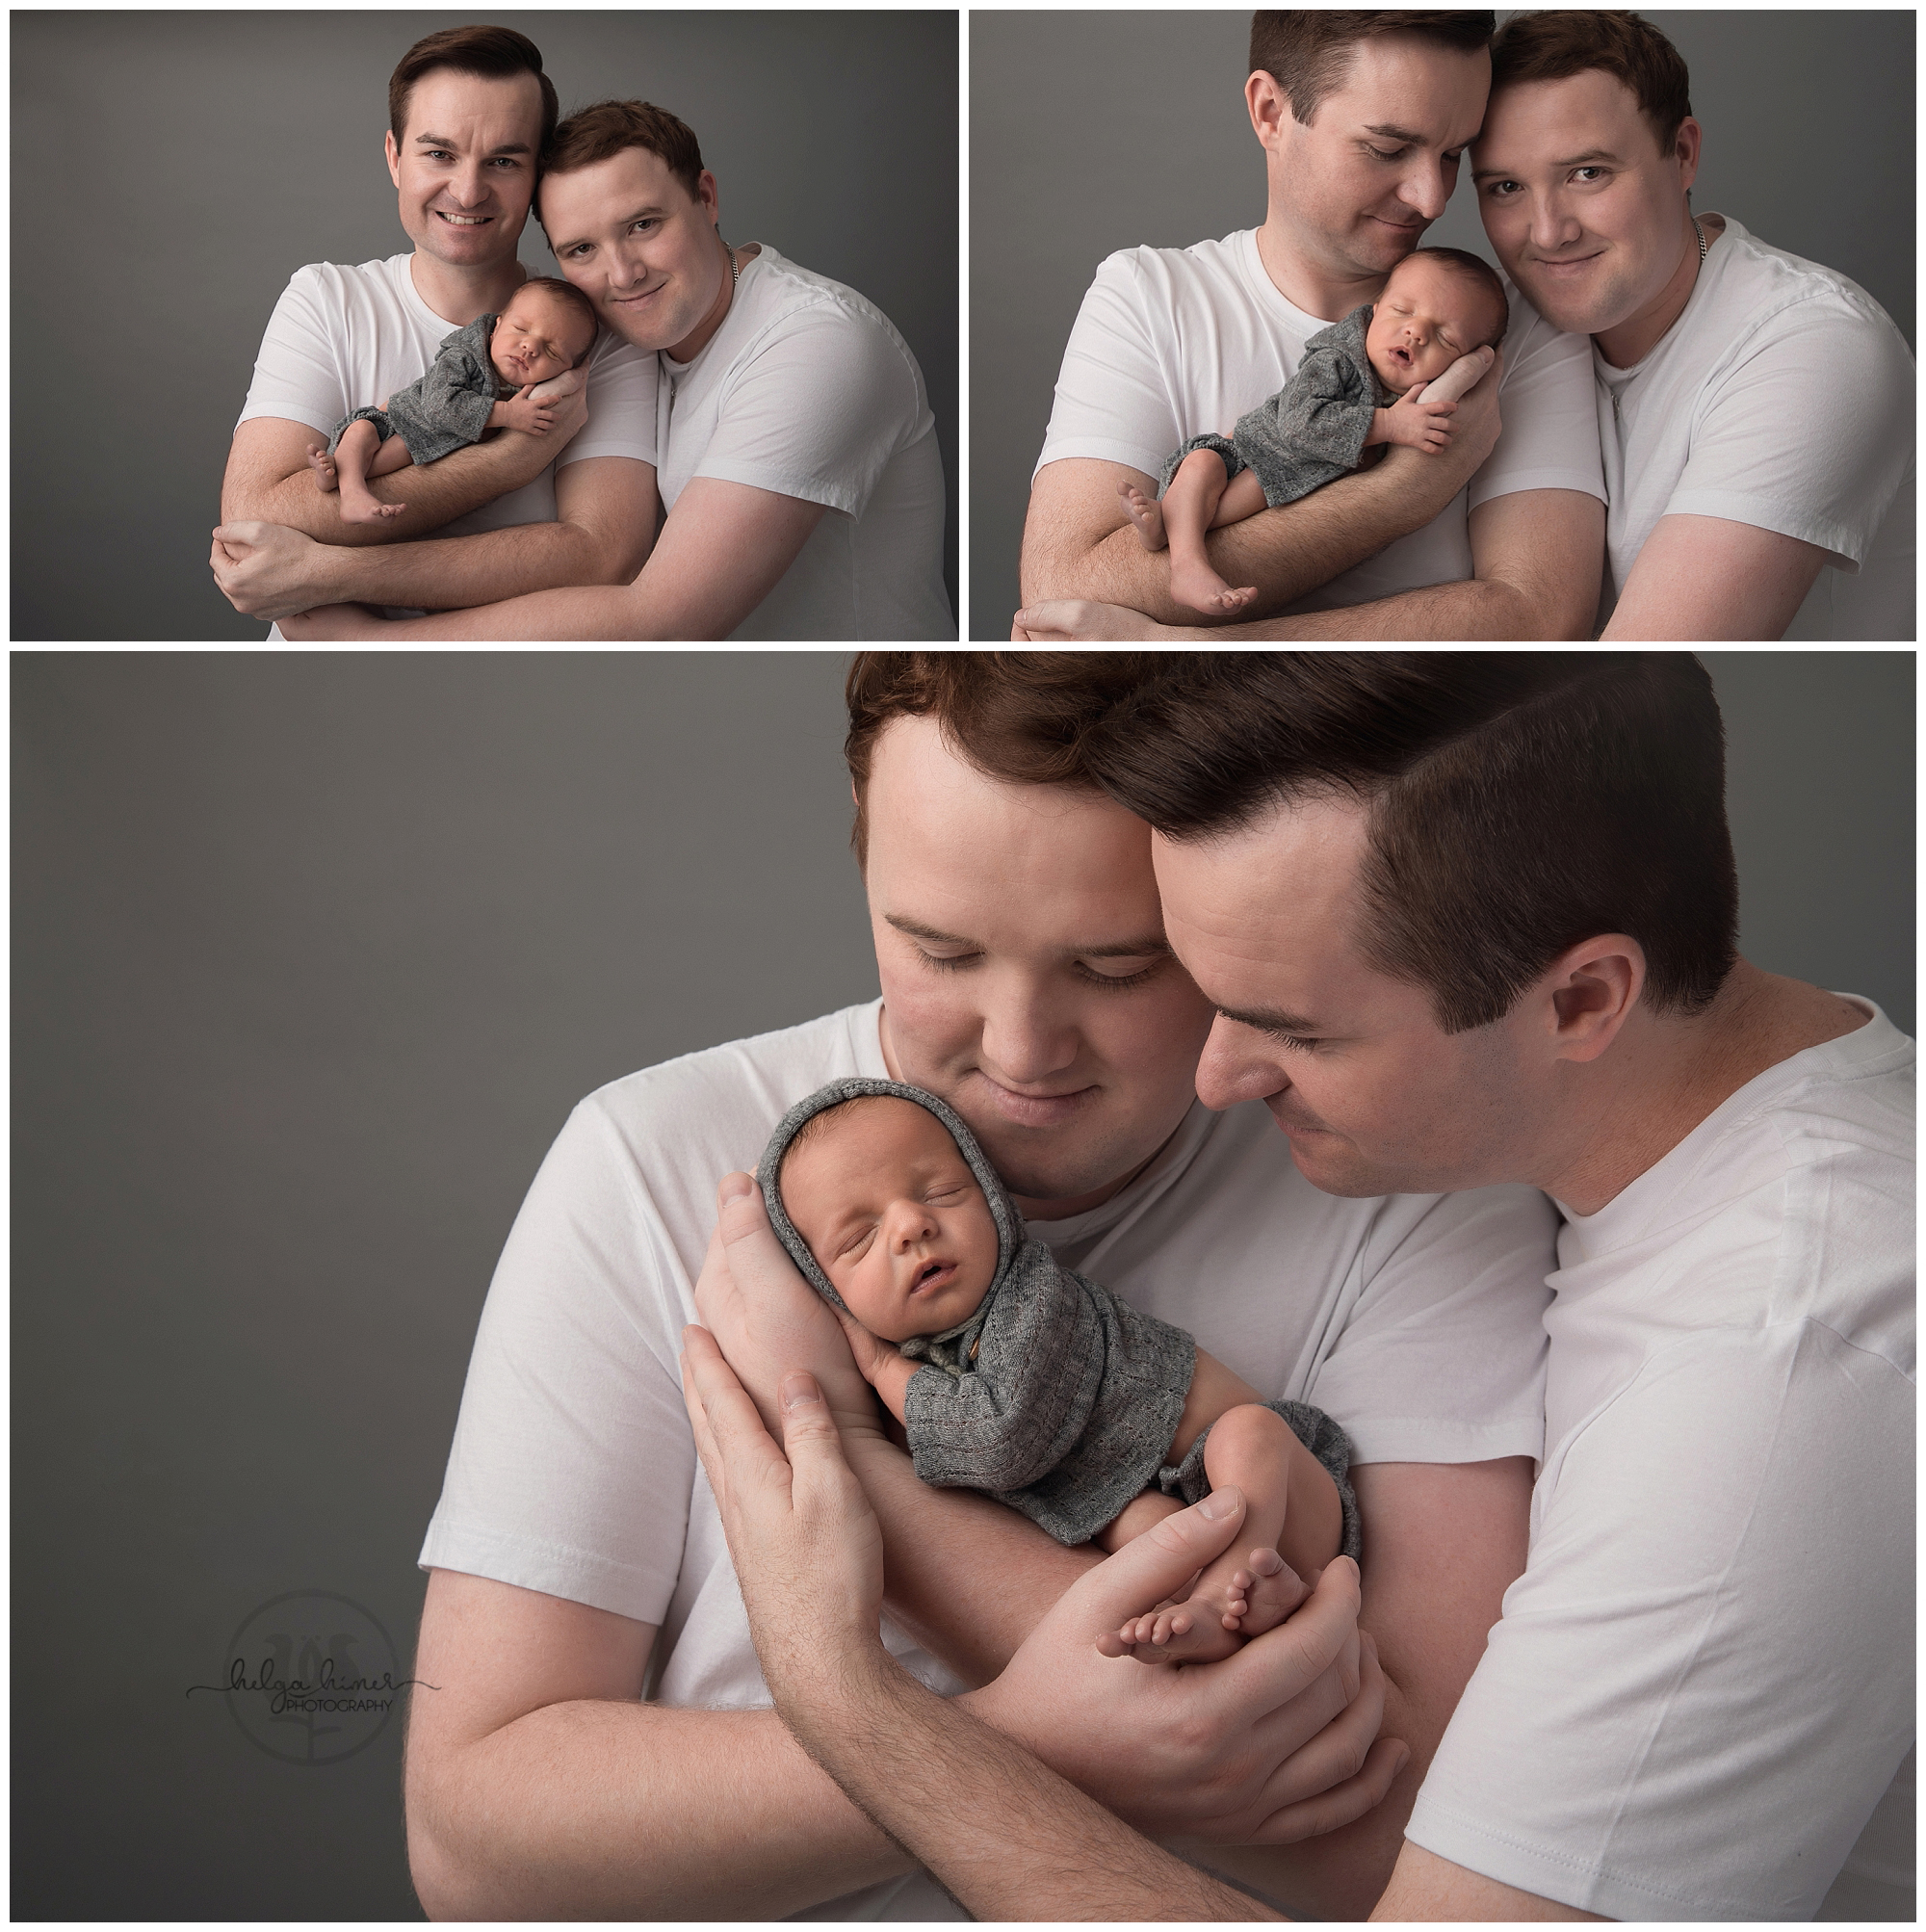 newborn-photography-ezra-helga-himer-photographer-sudbury-two-dads-samesex-couple-famly-photo-white-shirt